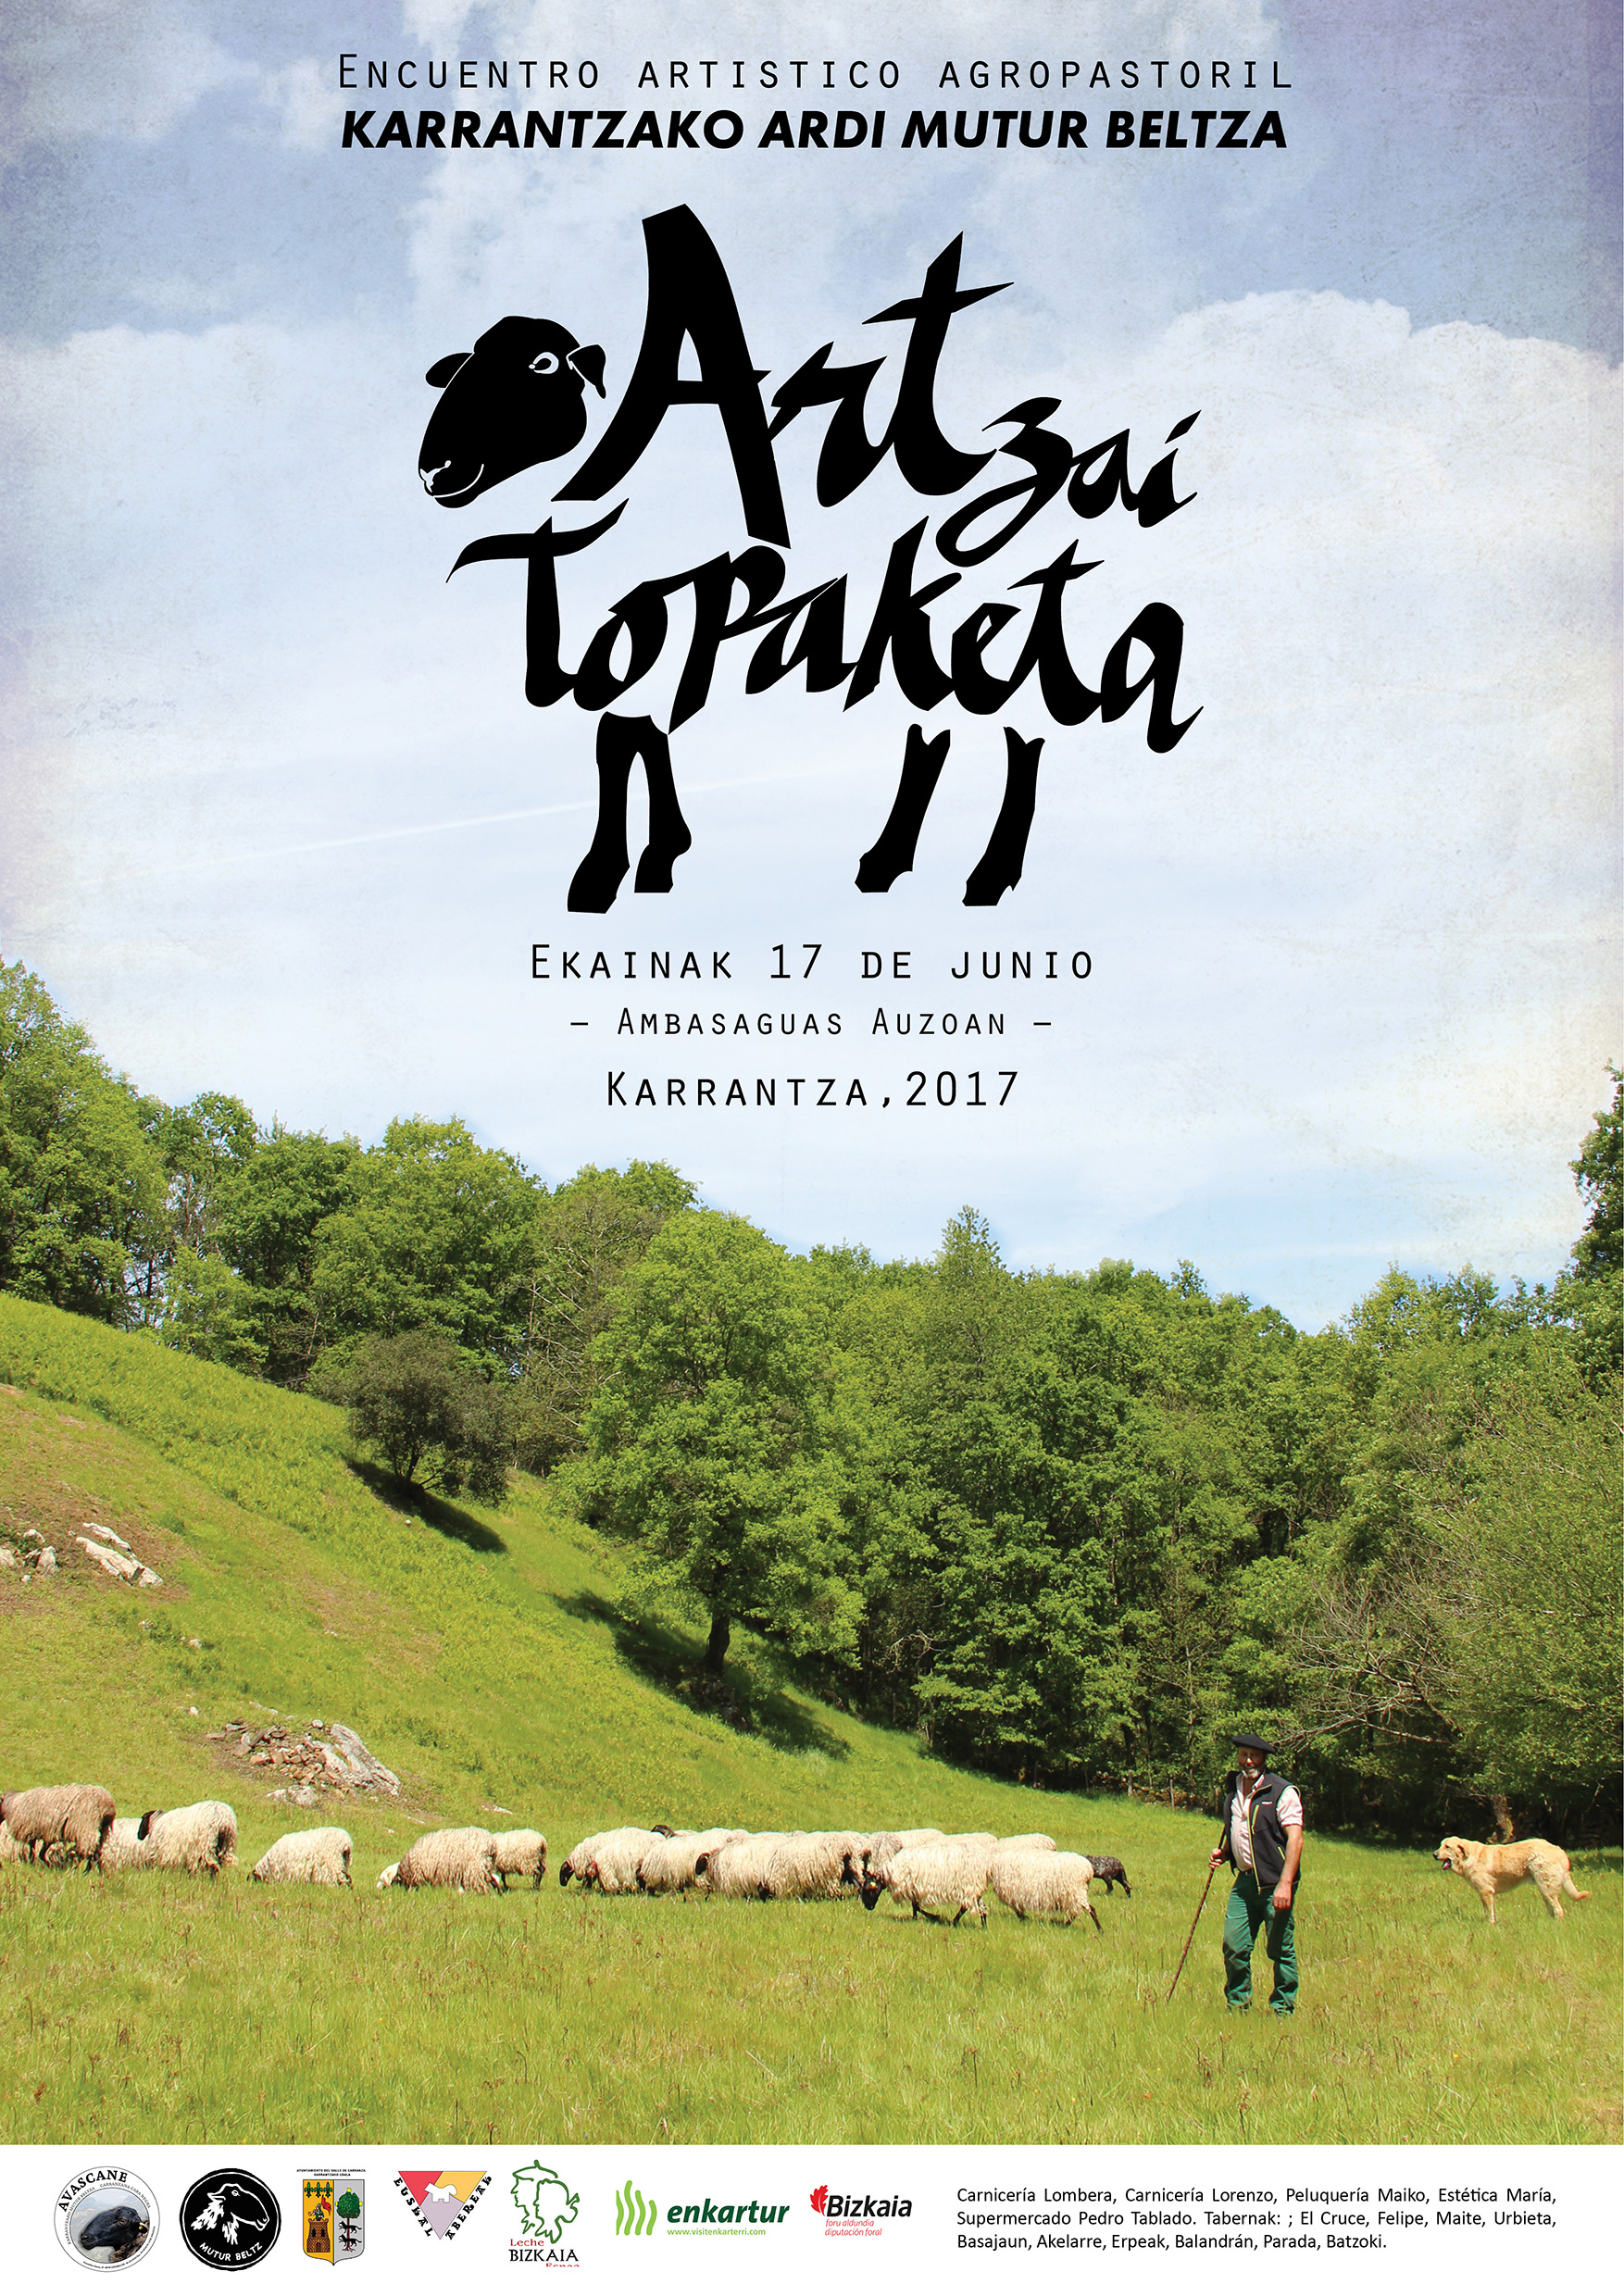 Encuentro Artístico Agropastoril Karrantza 2017